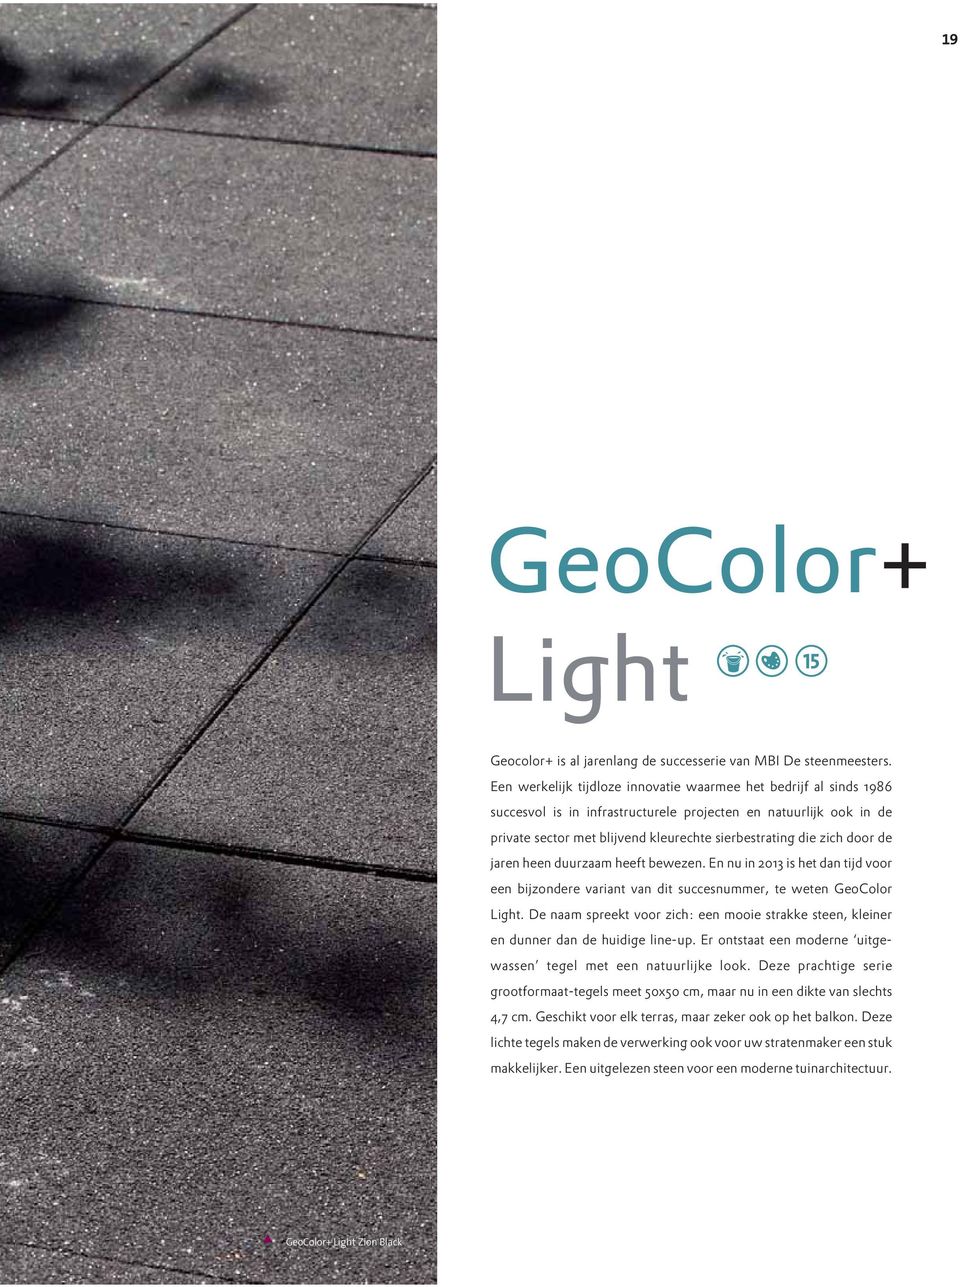 door de jaren heen duurzaam heeft bewezen. En nu in 2013 is het dan tijd voor een bijzondere variant van dit succesnummer, te weten GeoColor Light.